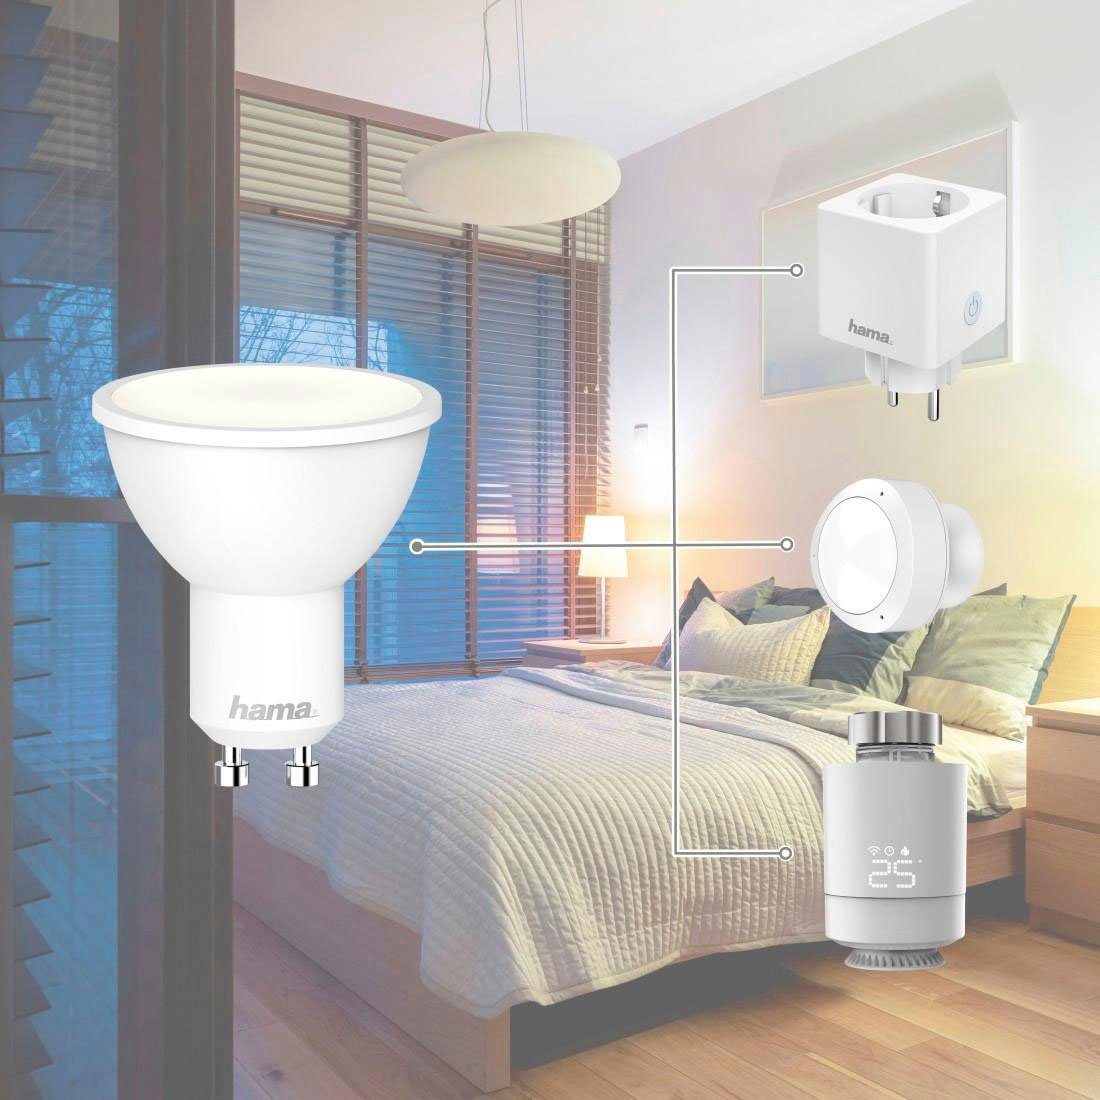 Weiß, Sprachsteuerung, Hama für Appsteuerung, WLAN LED Lampe, GU10 GU10,5W, LED-Leuchtmittel